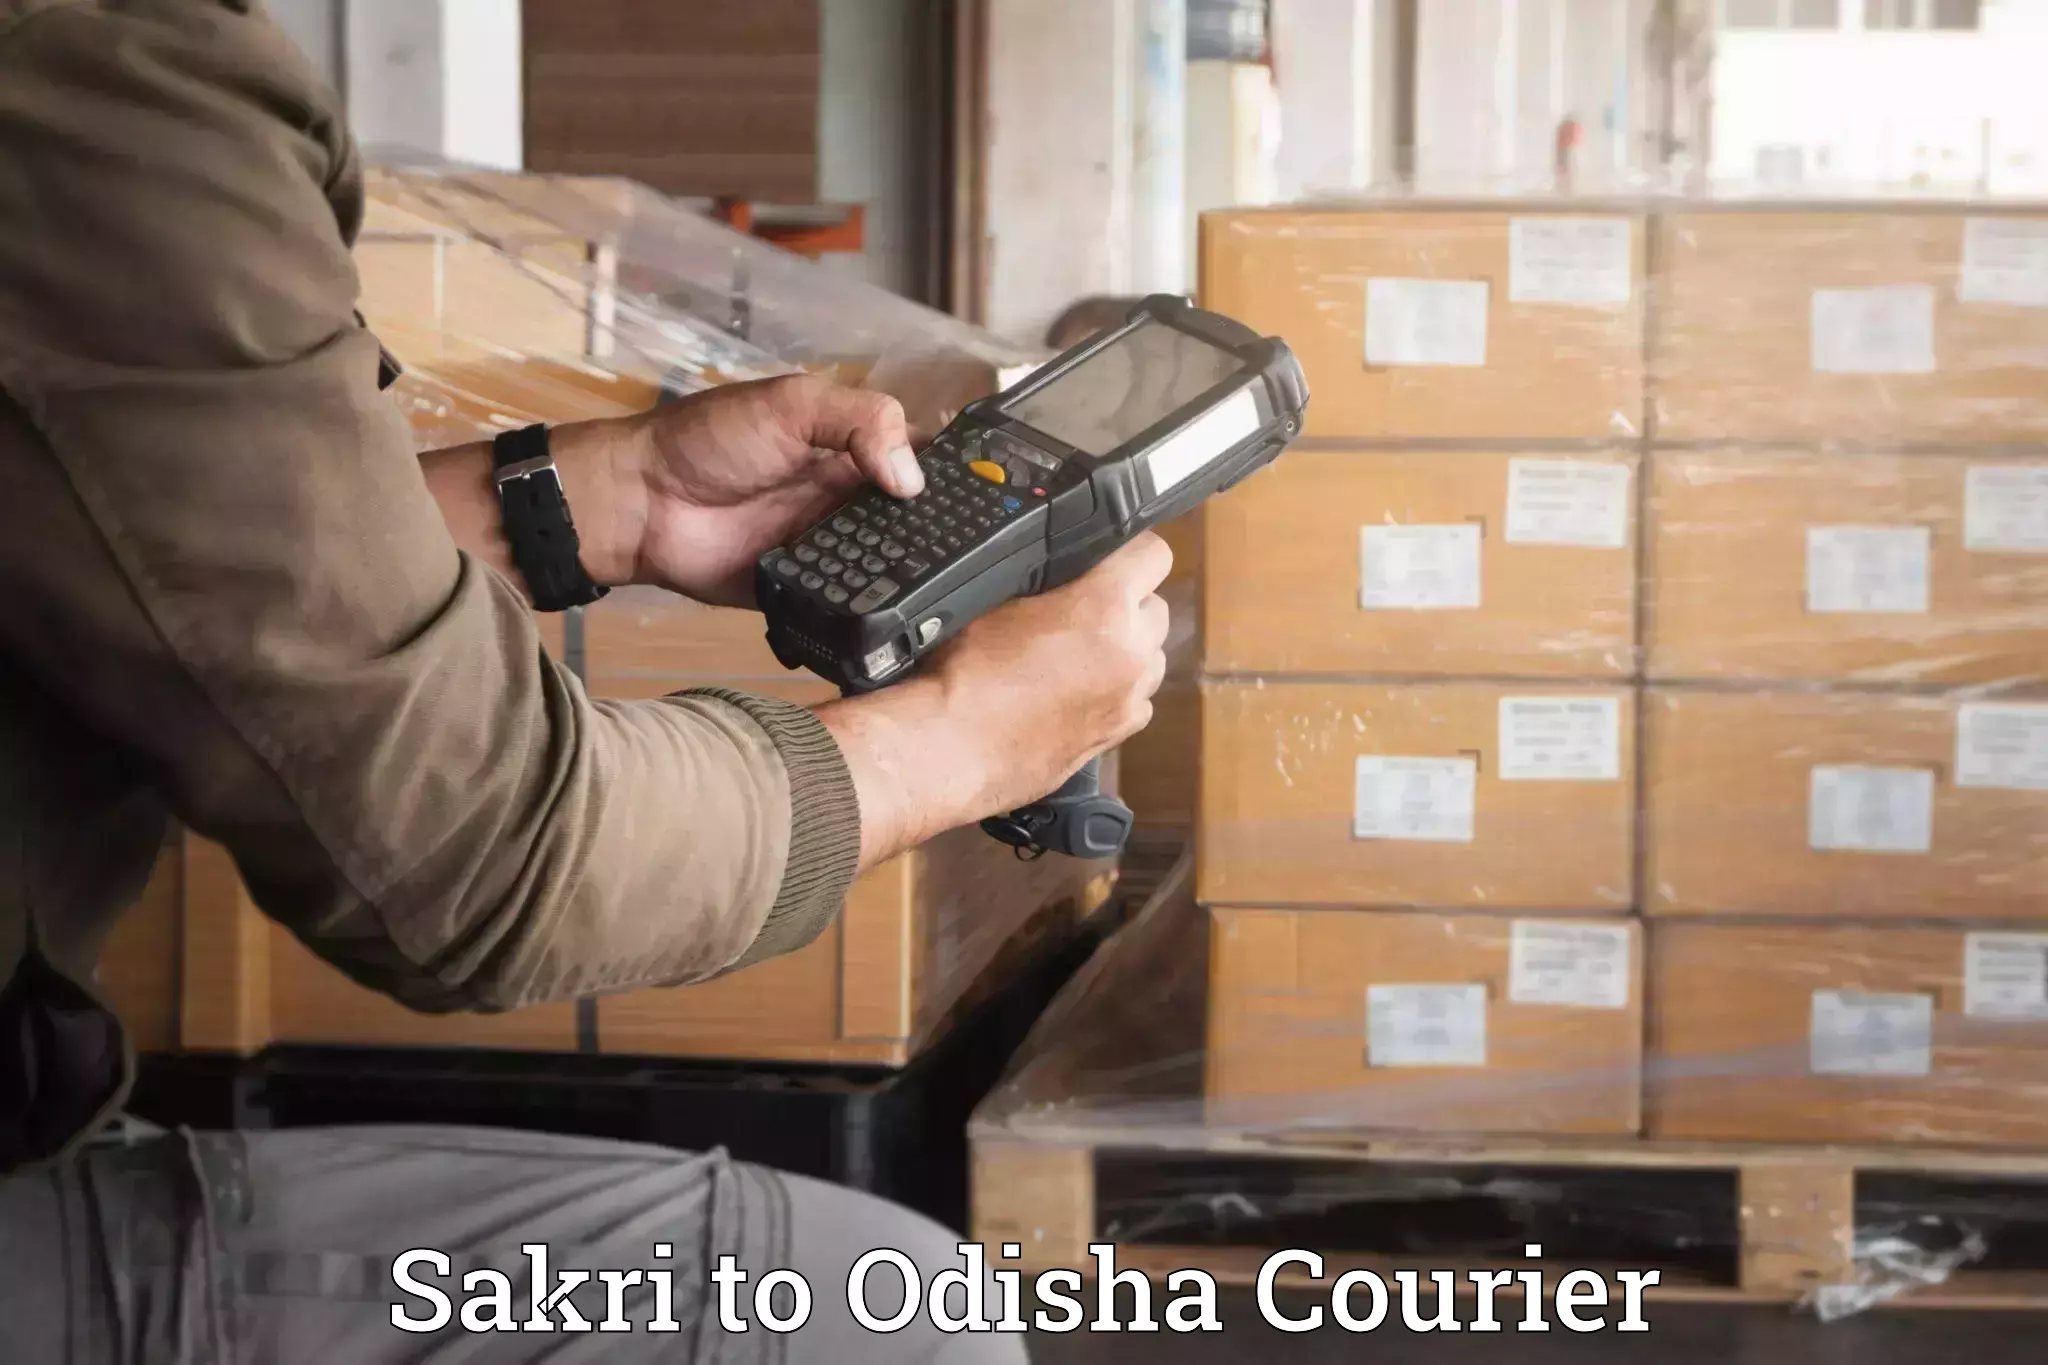 Luggage dispatch service Sakri to Odisha